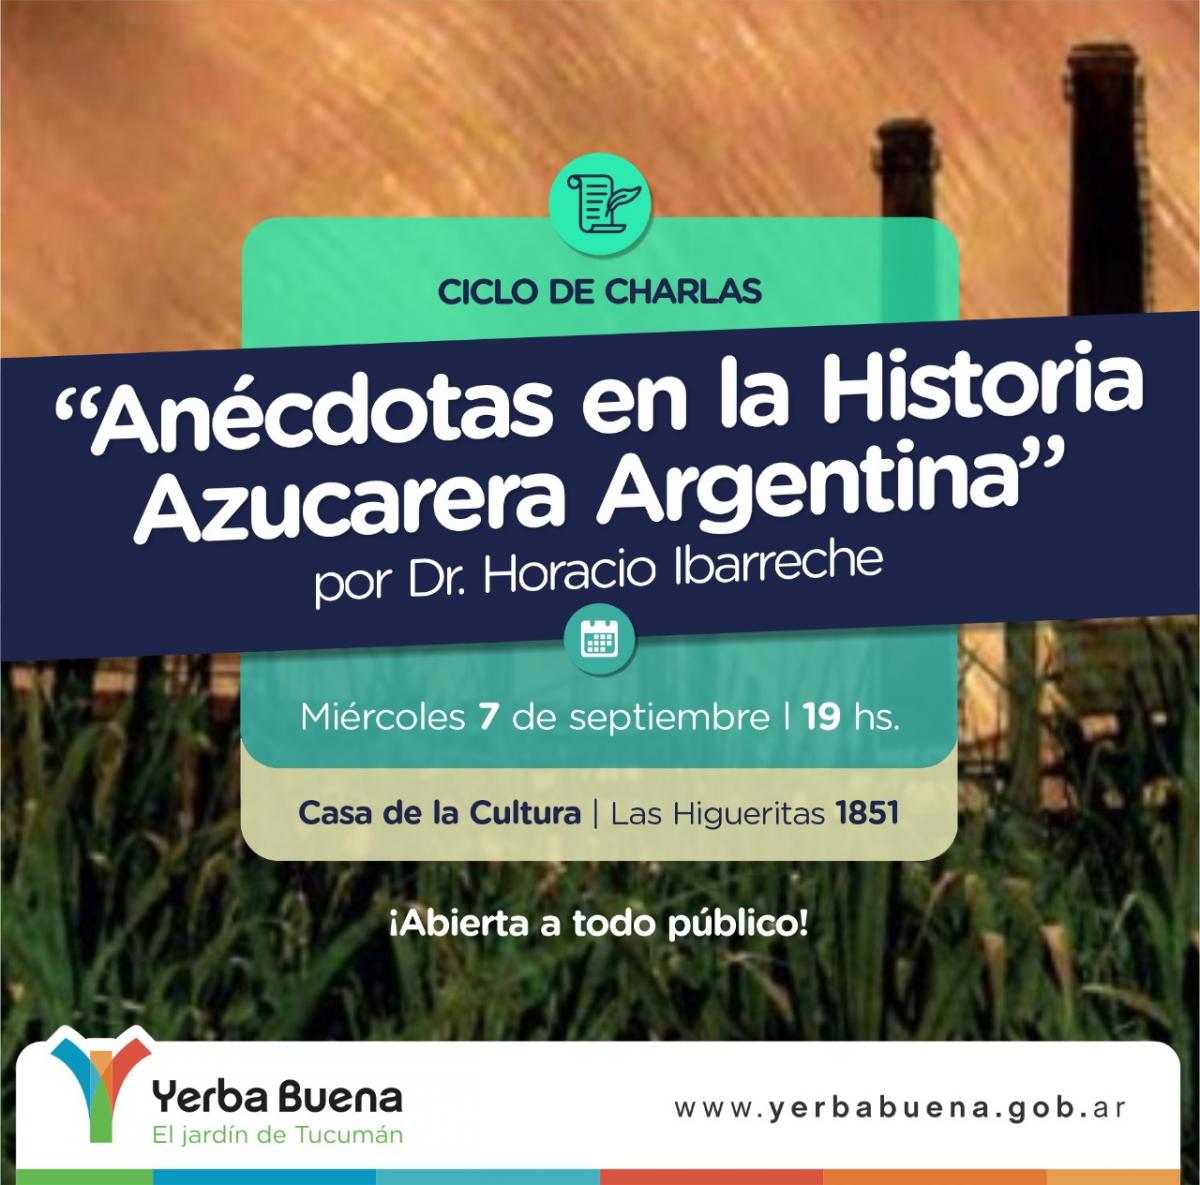 Yerba Buena: lanzan el ciclo de charlas para vecinos Historia Azucarera Argentina